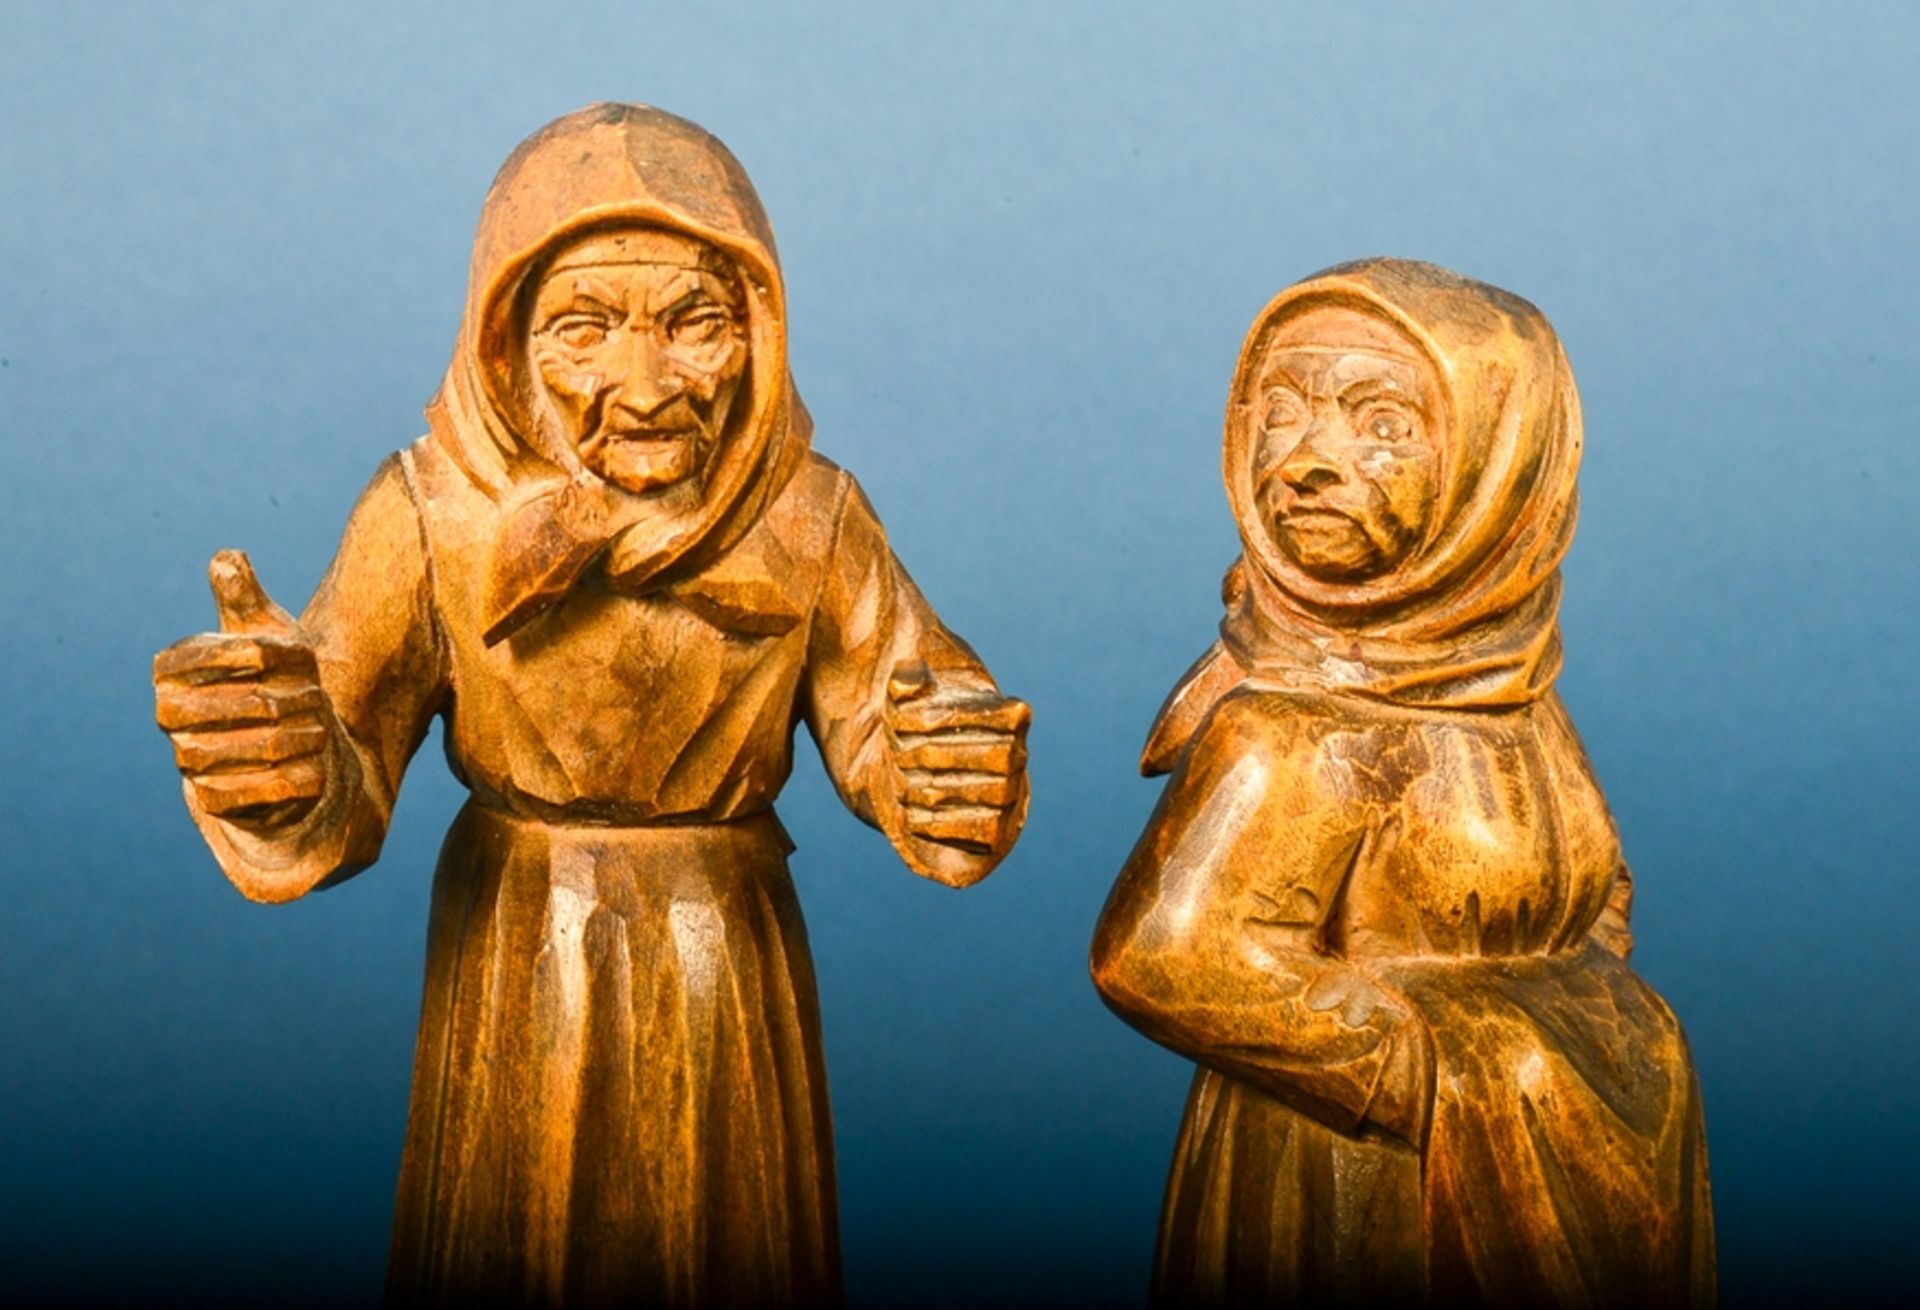 "Paar schnackende Bäuerinnen". Holz geschnitzt. Höhe ca. 15 bzw. 16 cm. Schöner Erhalt. - Bild 2 aus 8